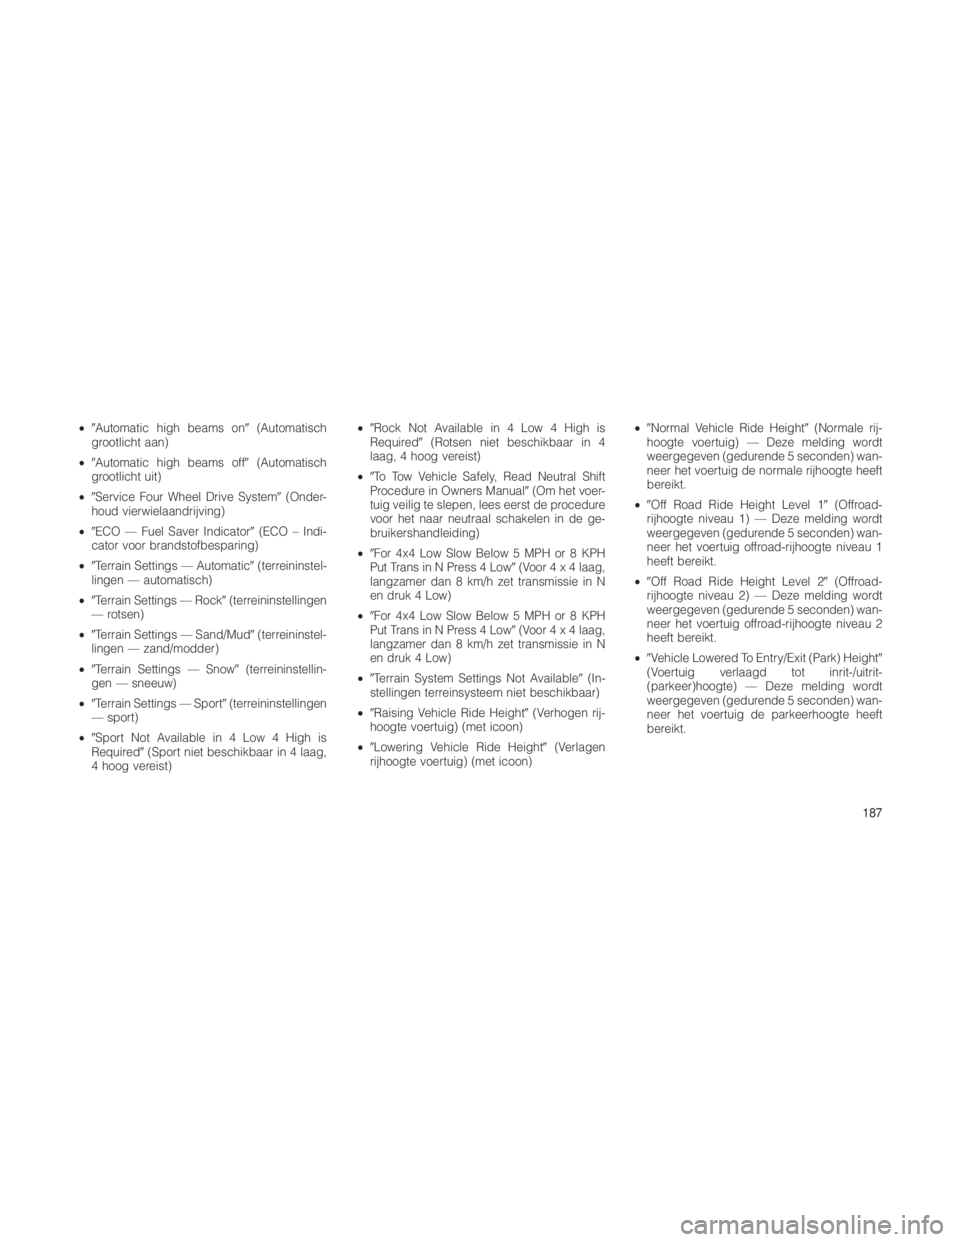 JEEP GRAND CHEROKEE 2012  Instructieboek (in Dutch) •Automatic high beams on (Automatisch
grootlicht aan)
• Automatic high beams off (Automatisch
grootlicht uit)
• Service Four Wheel Drive System (Onder-
houd vierwielaandrijving)
• ECO �